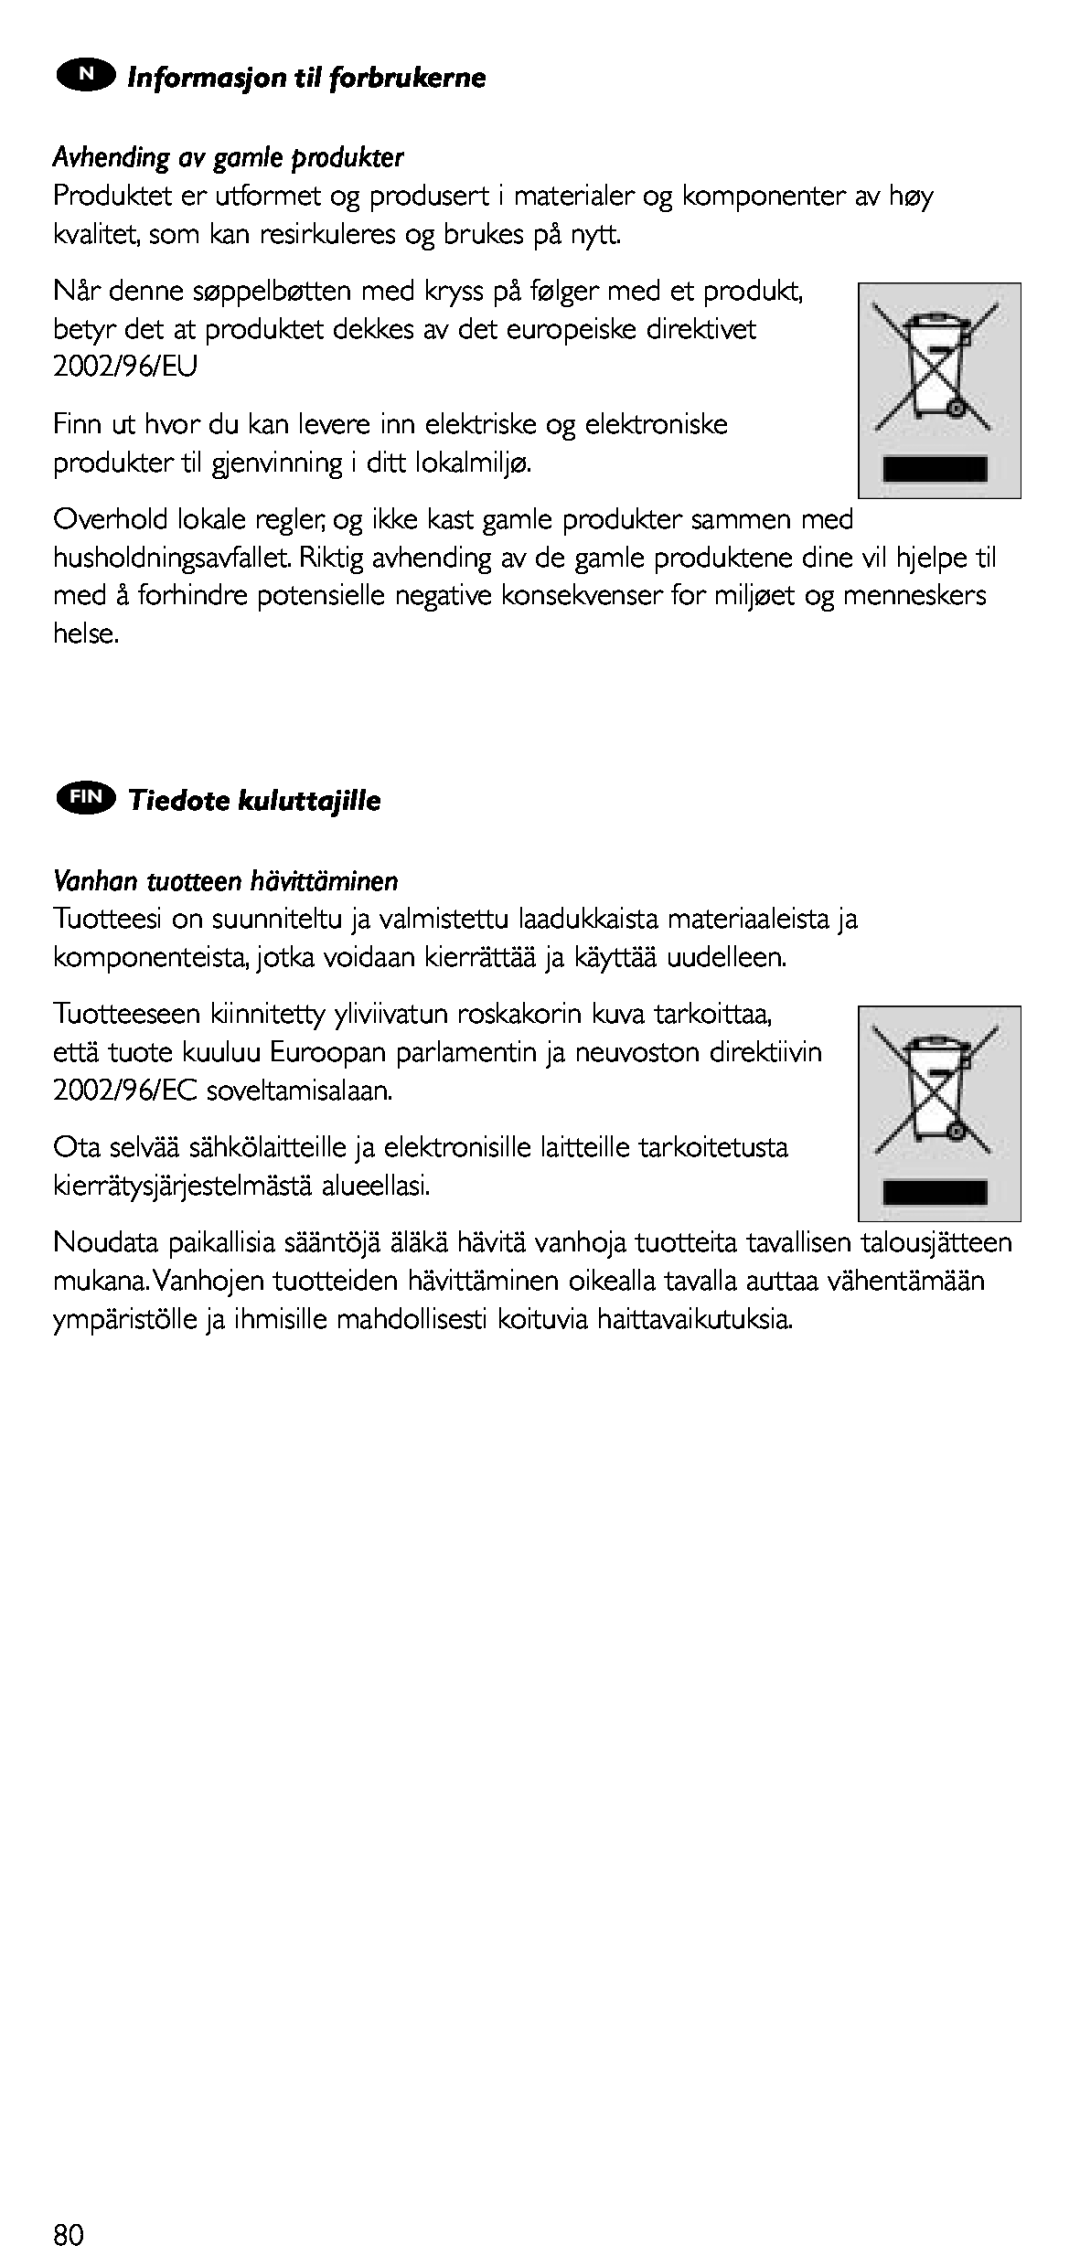 Philips SRU 5020/86 manual N Informasjon til forbrukerne, Avhending av gamle produkter, FIN Tiedote kuluttajille 